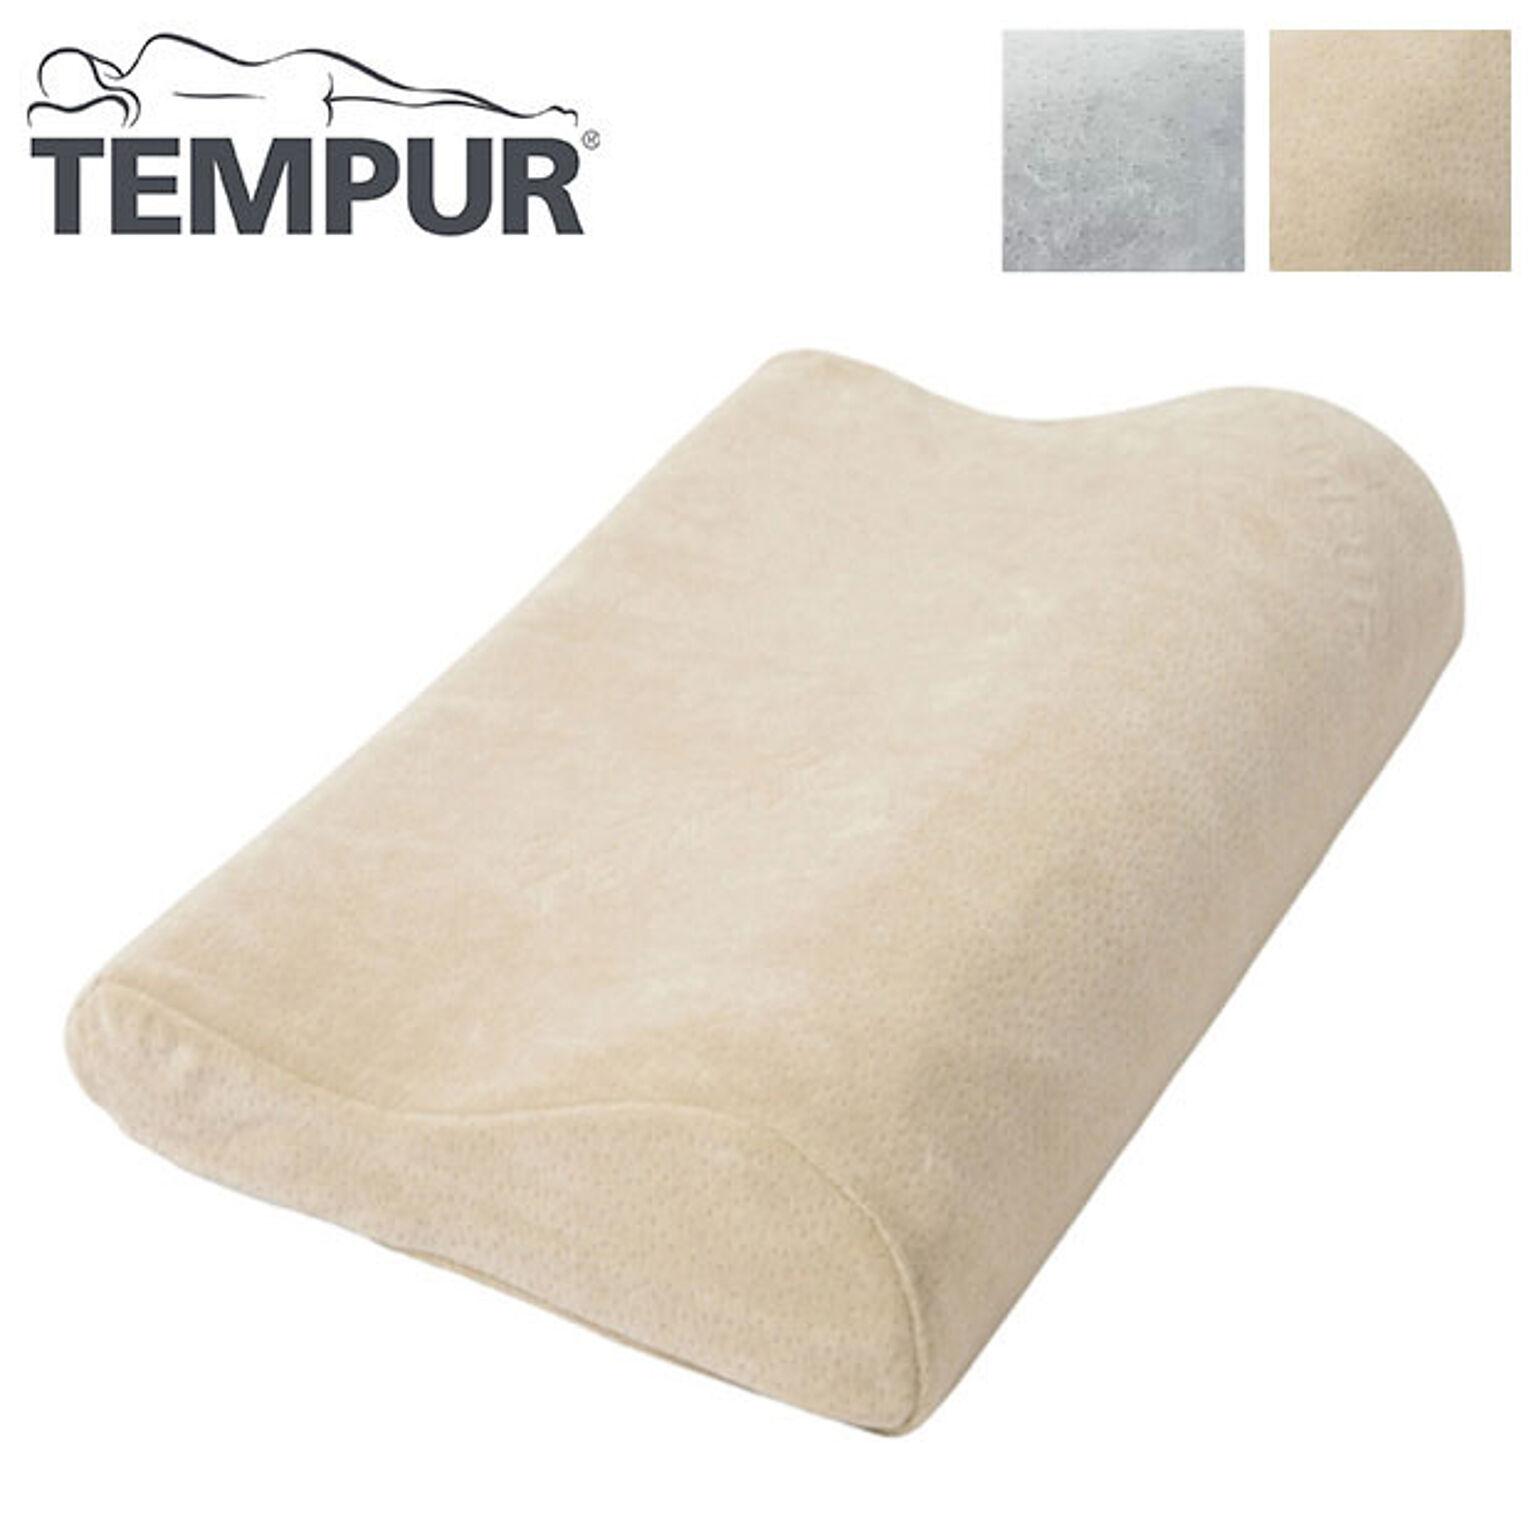 TEMPUR テンピュール 枕 オリジナルネックピロー Sサイズ Mサイズ エルゴノミック 3年間保証付 低反発 まくら かため